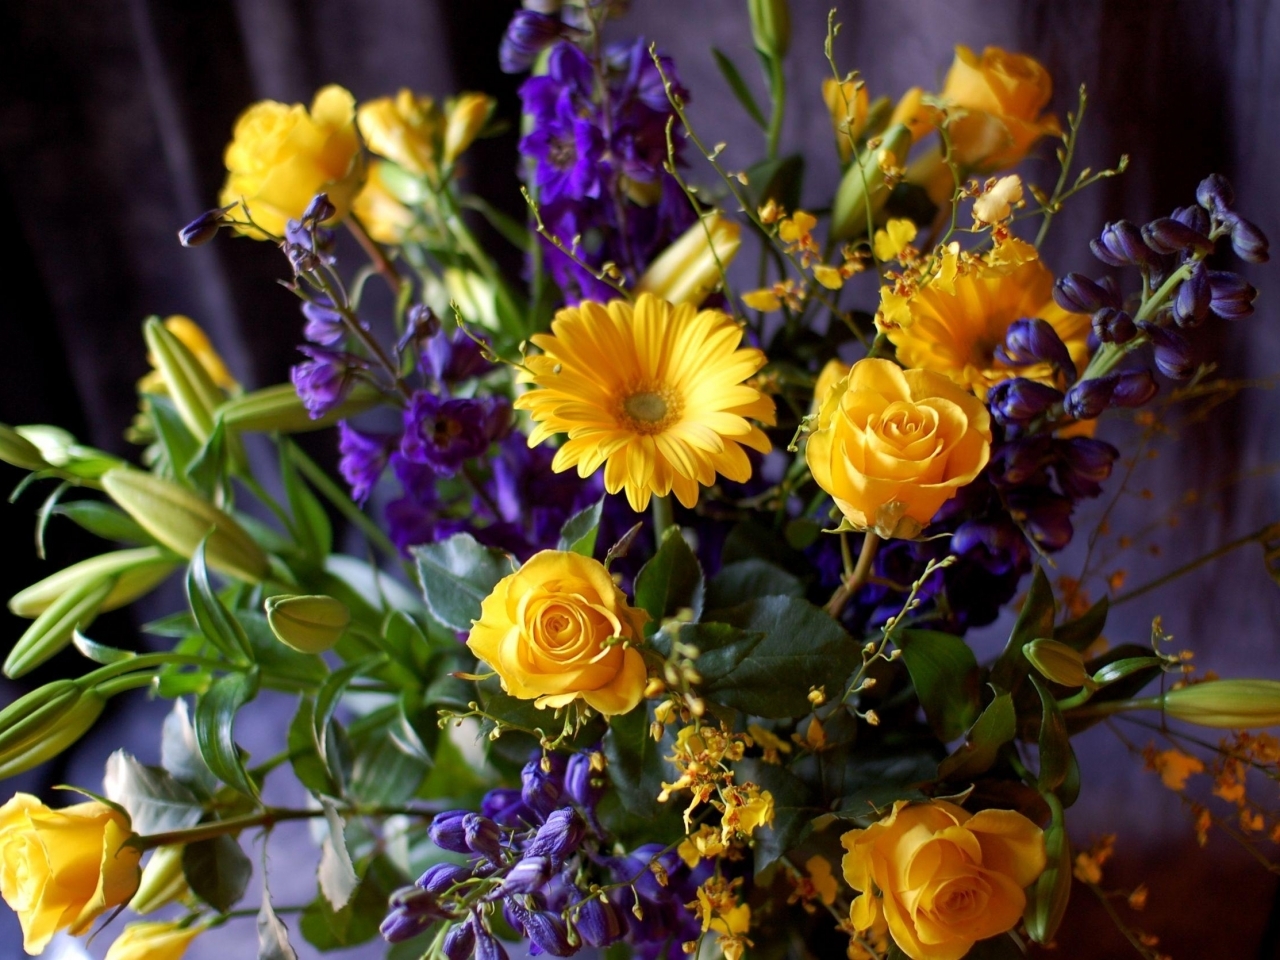 bouquets, plants, flowers cellphone